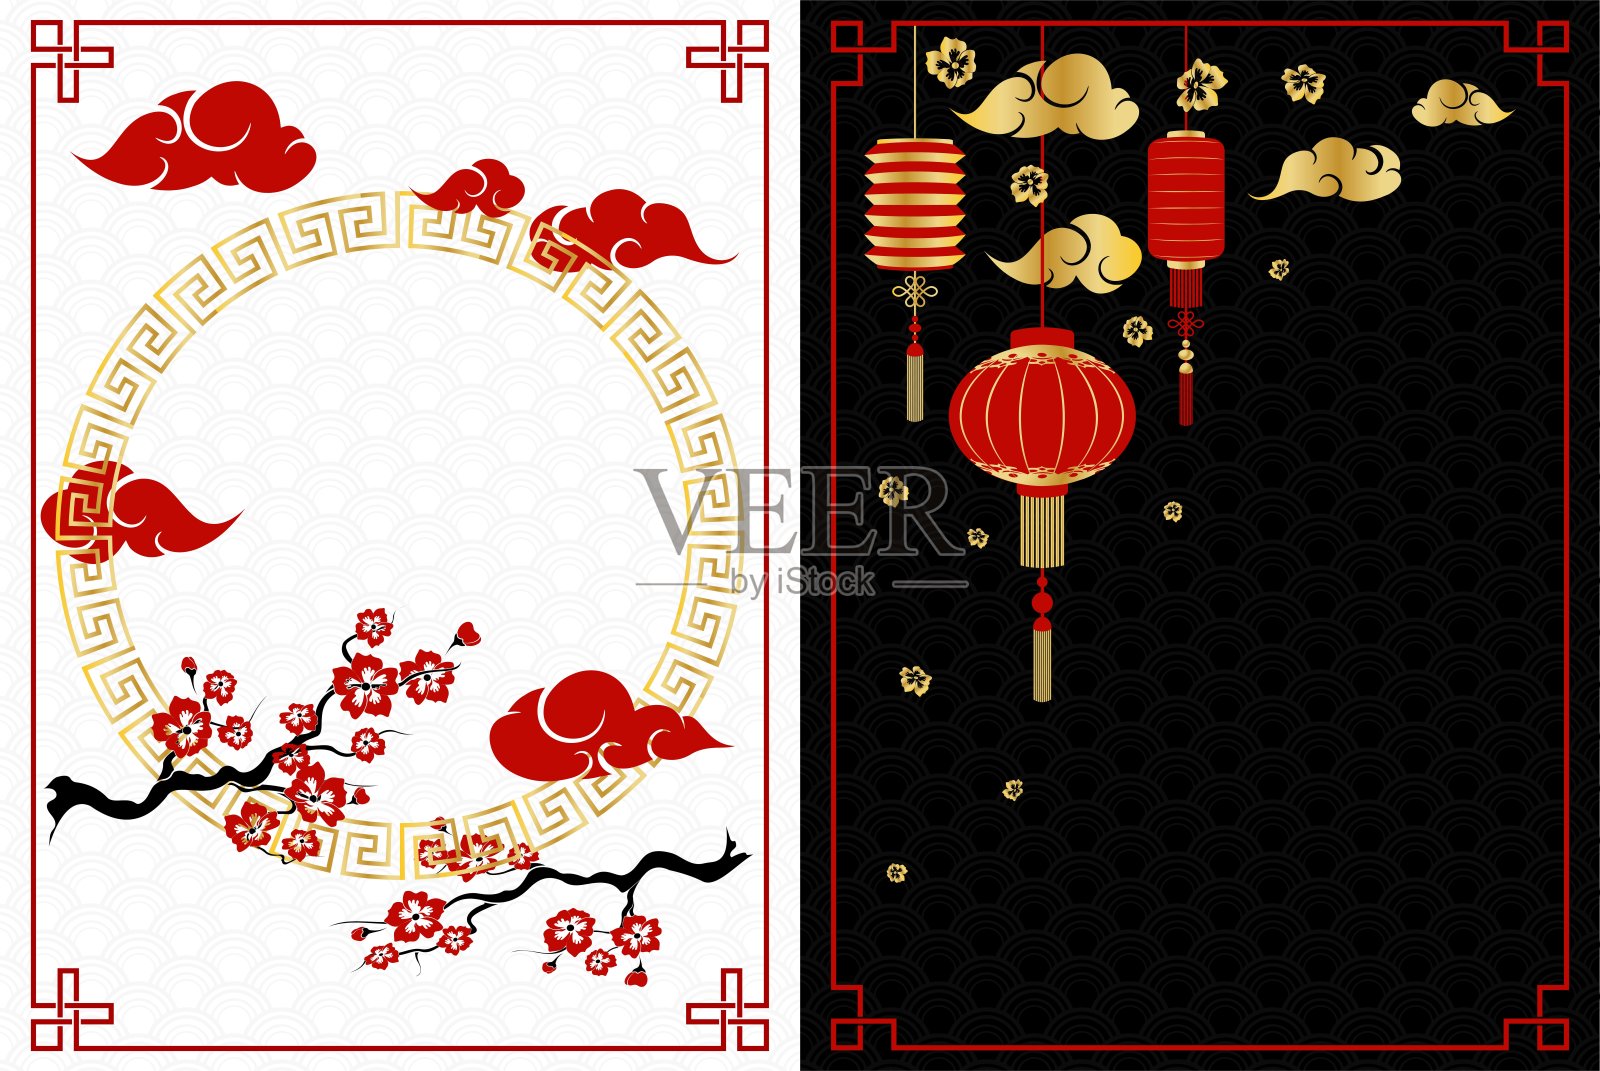 中国新年的白色和黑色横幅樱桃和灯笼设计模板素材